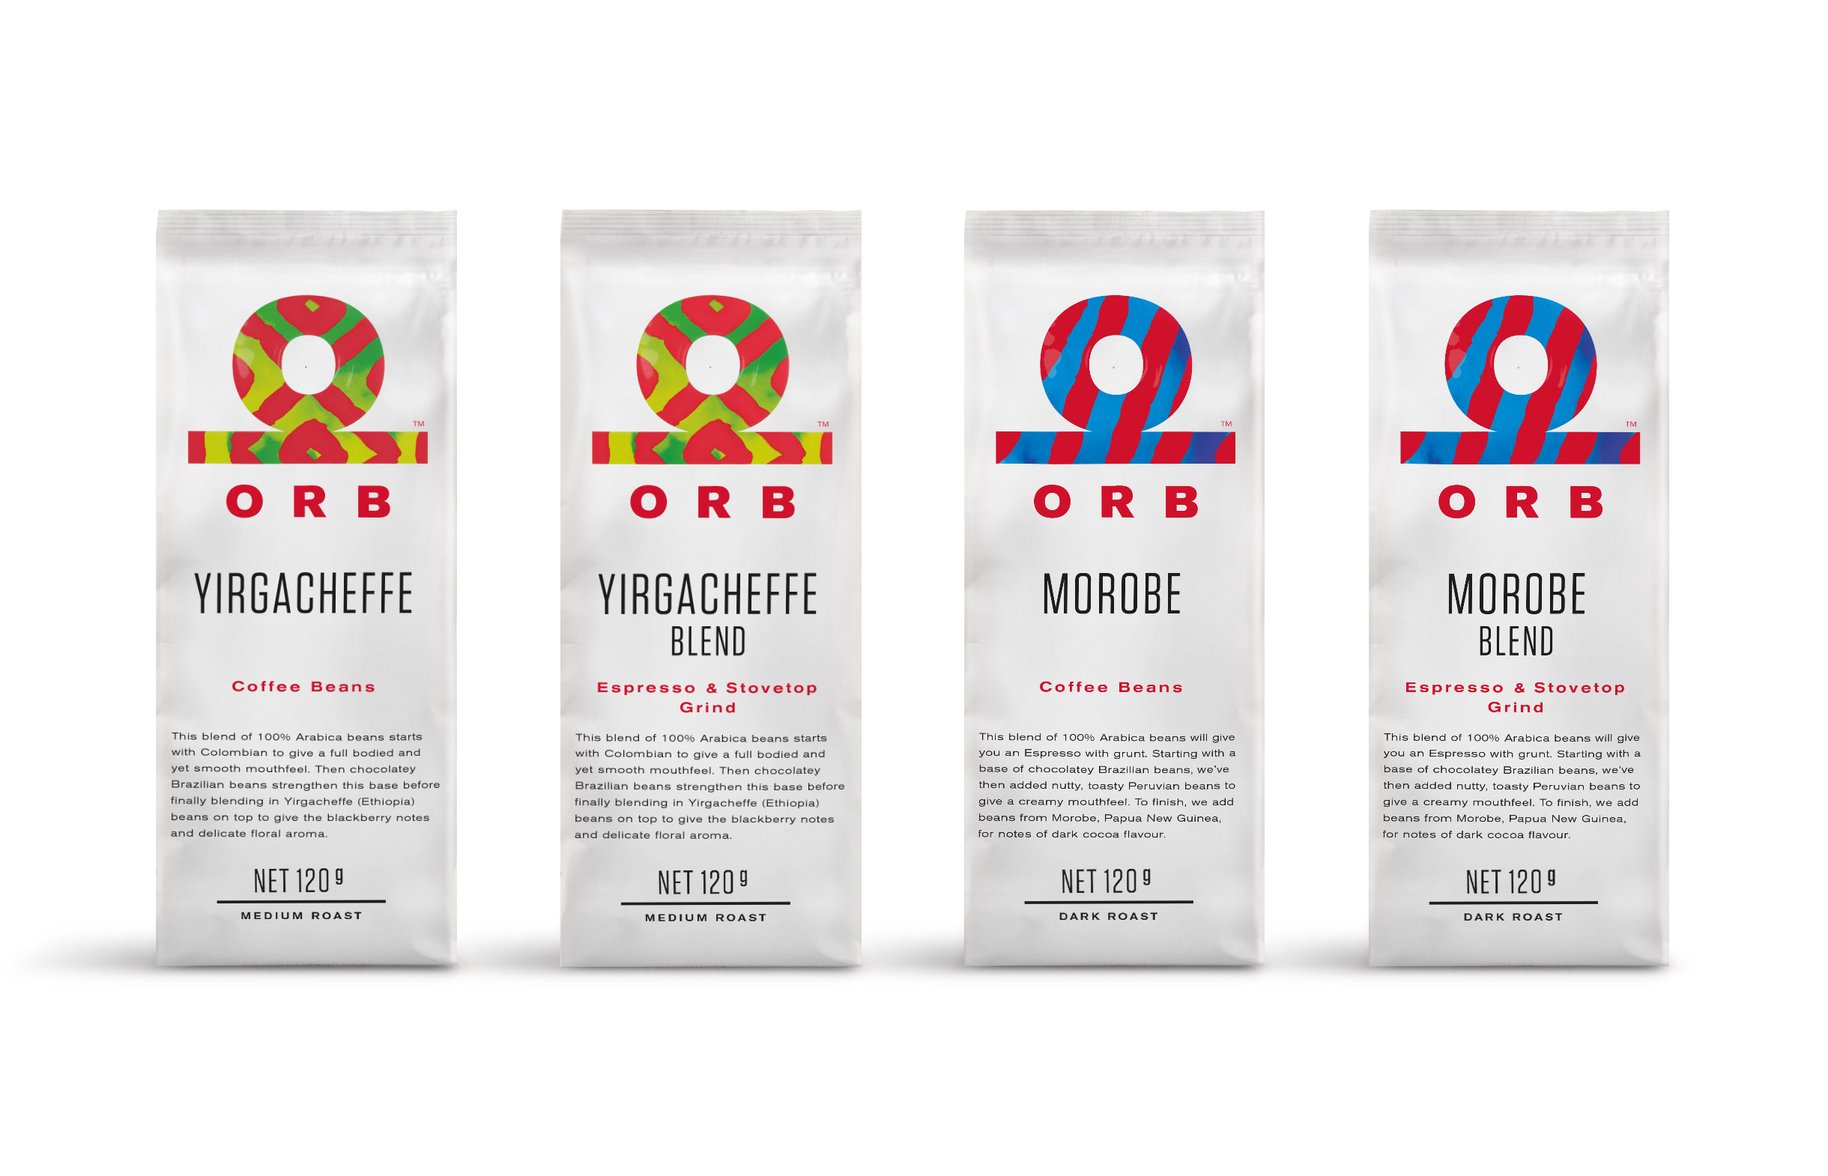 Orb Coffee bean packaging product range